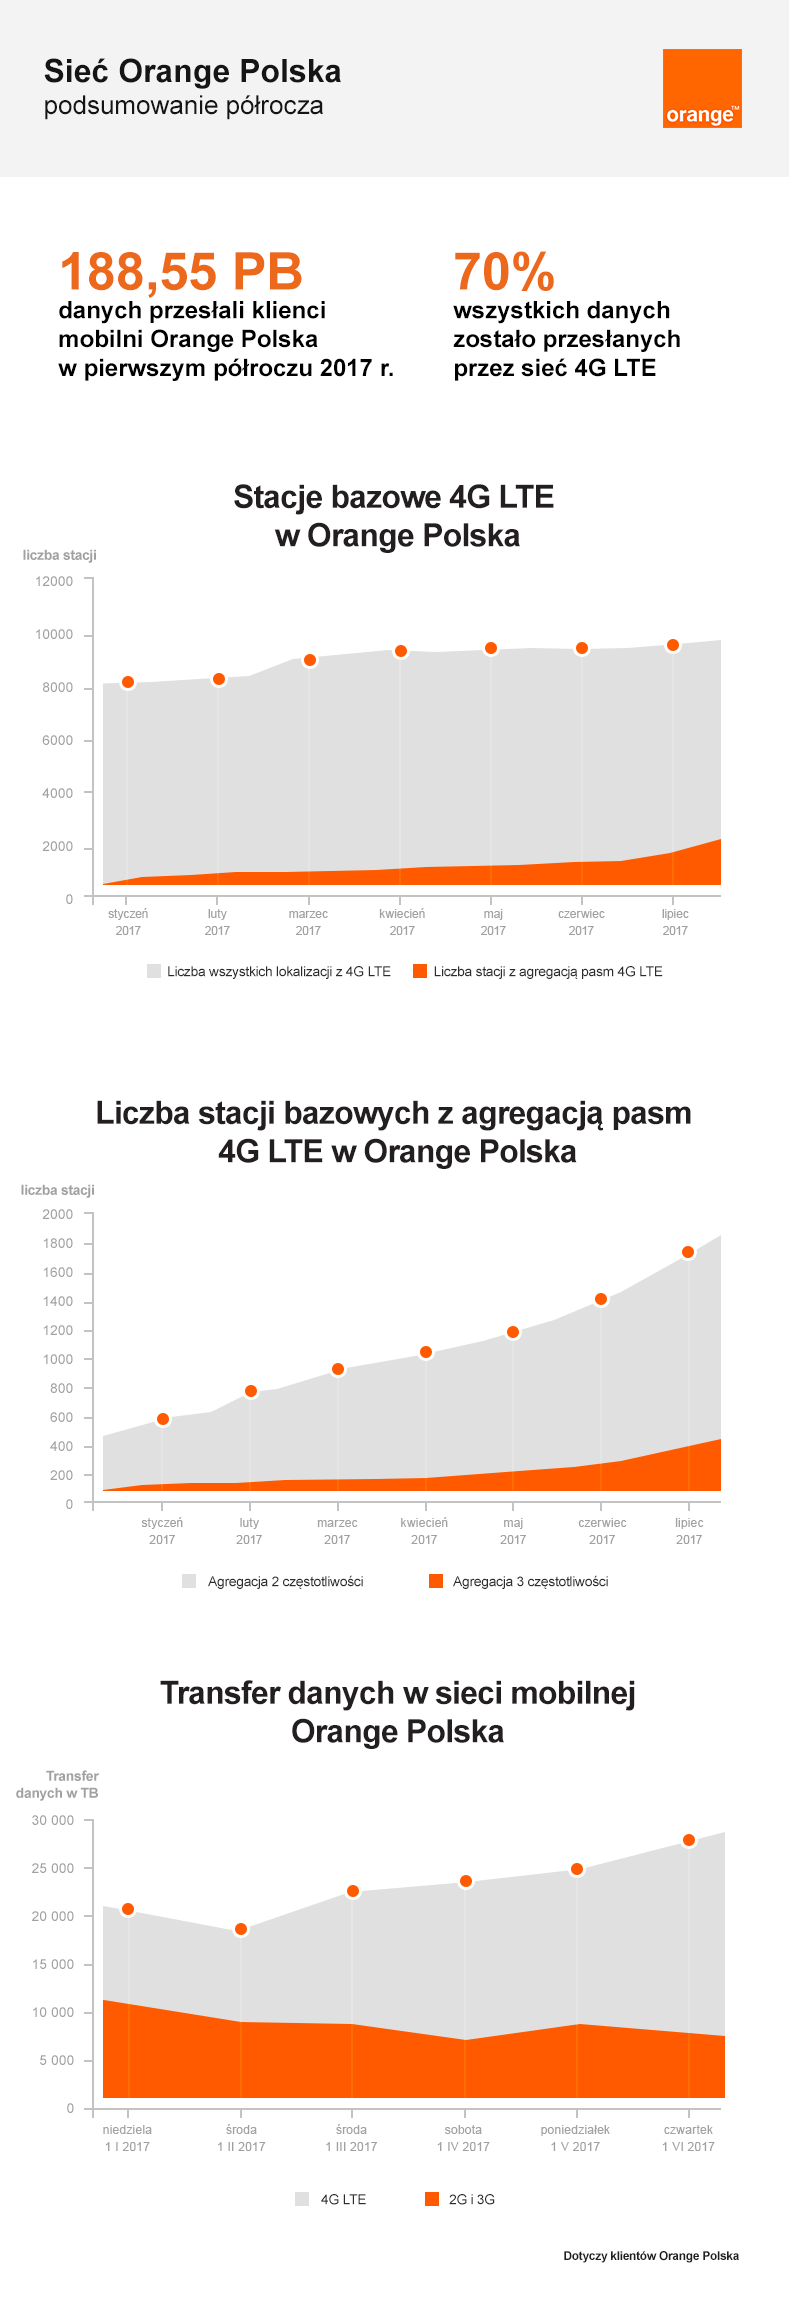 orange-polska-po-pierwszym-polroczu2017-rozwoj-sieci.png